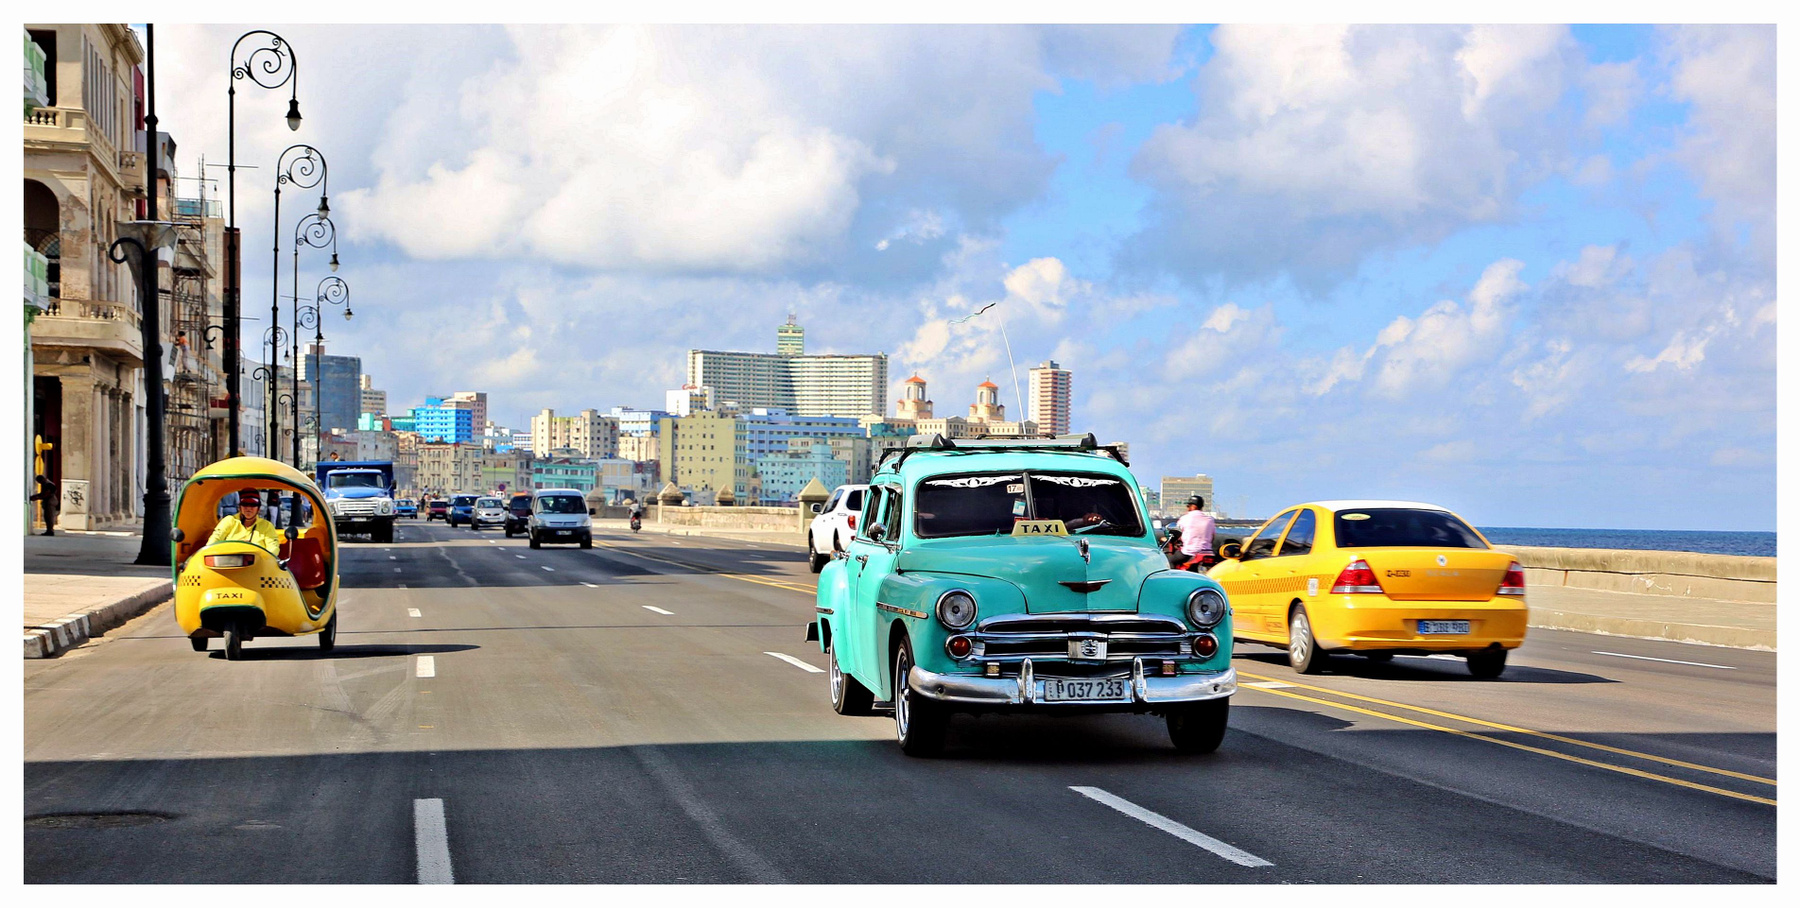 Mi Habana,mi tierra querida cuba la habana vieja libre isla bonita retrocar